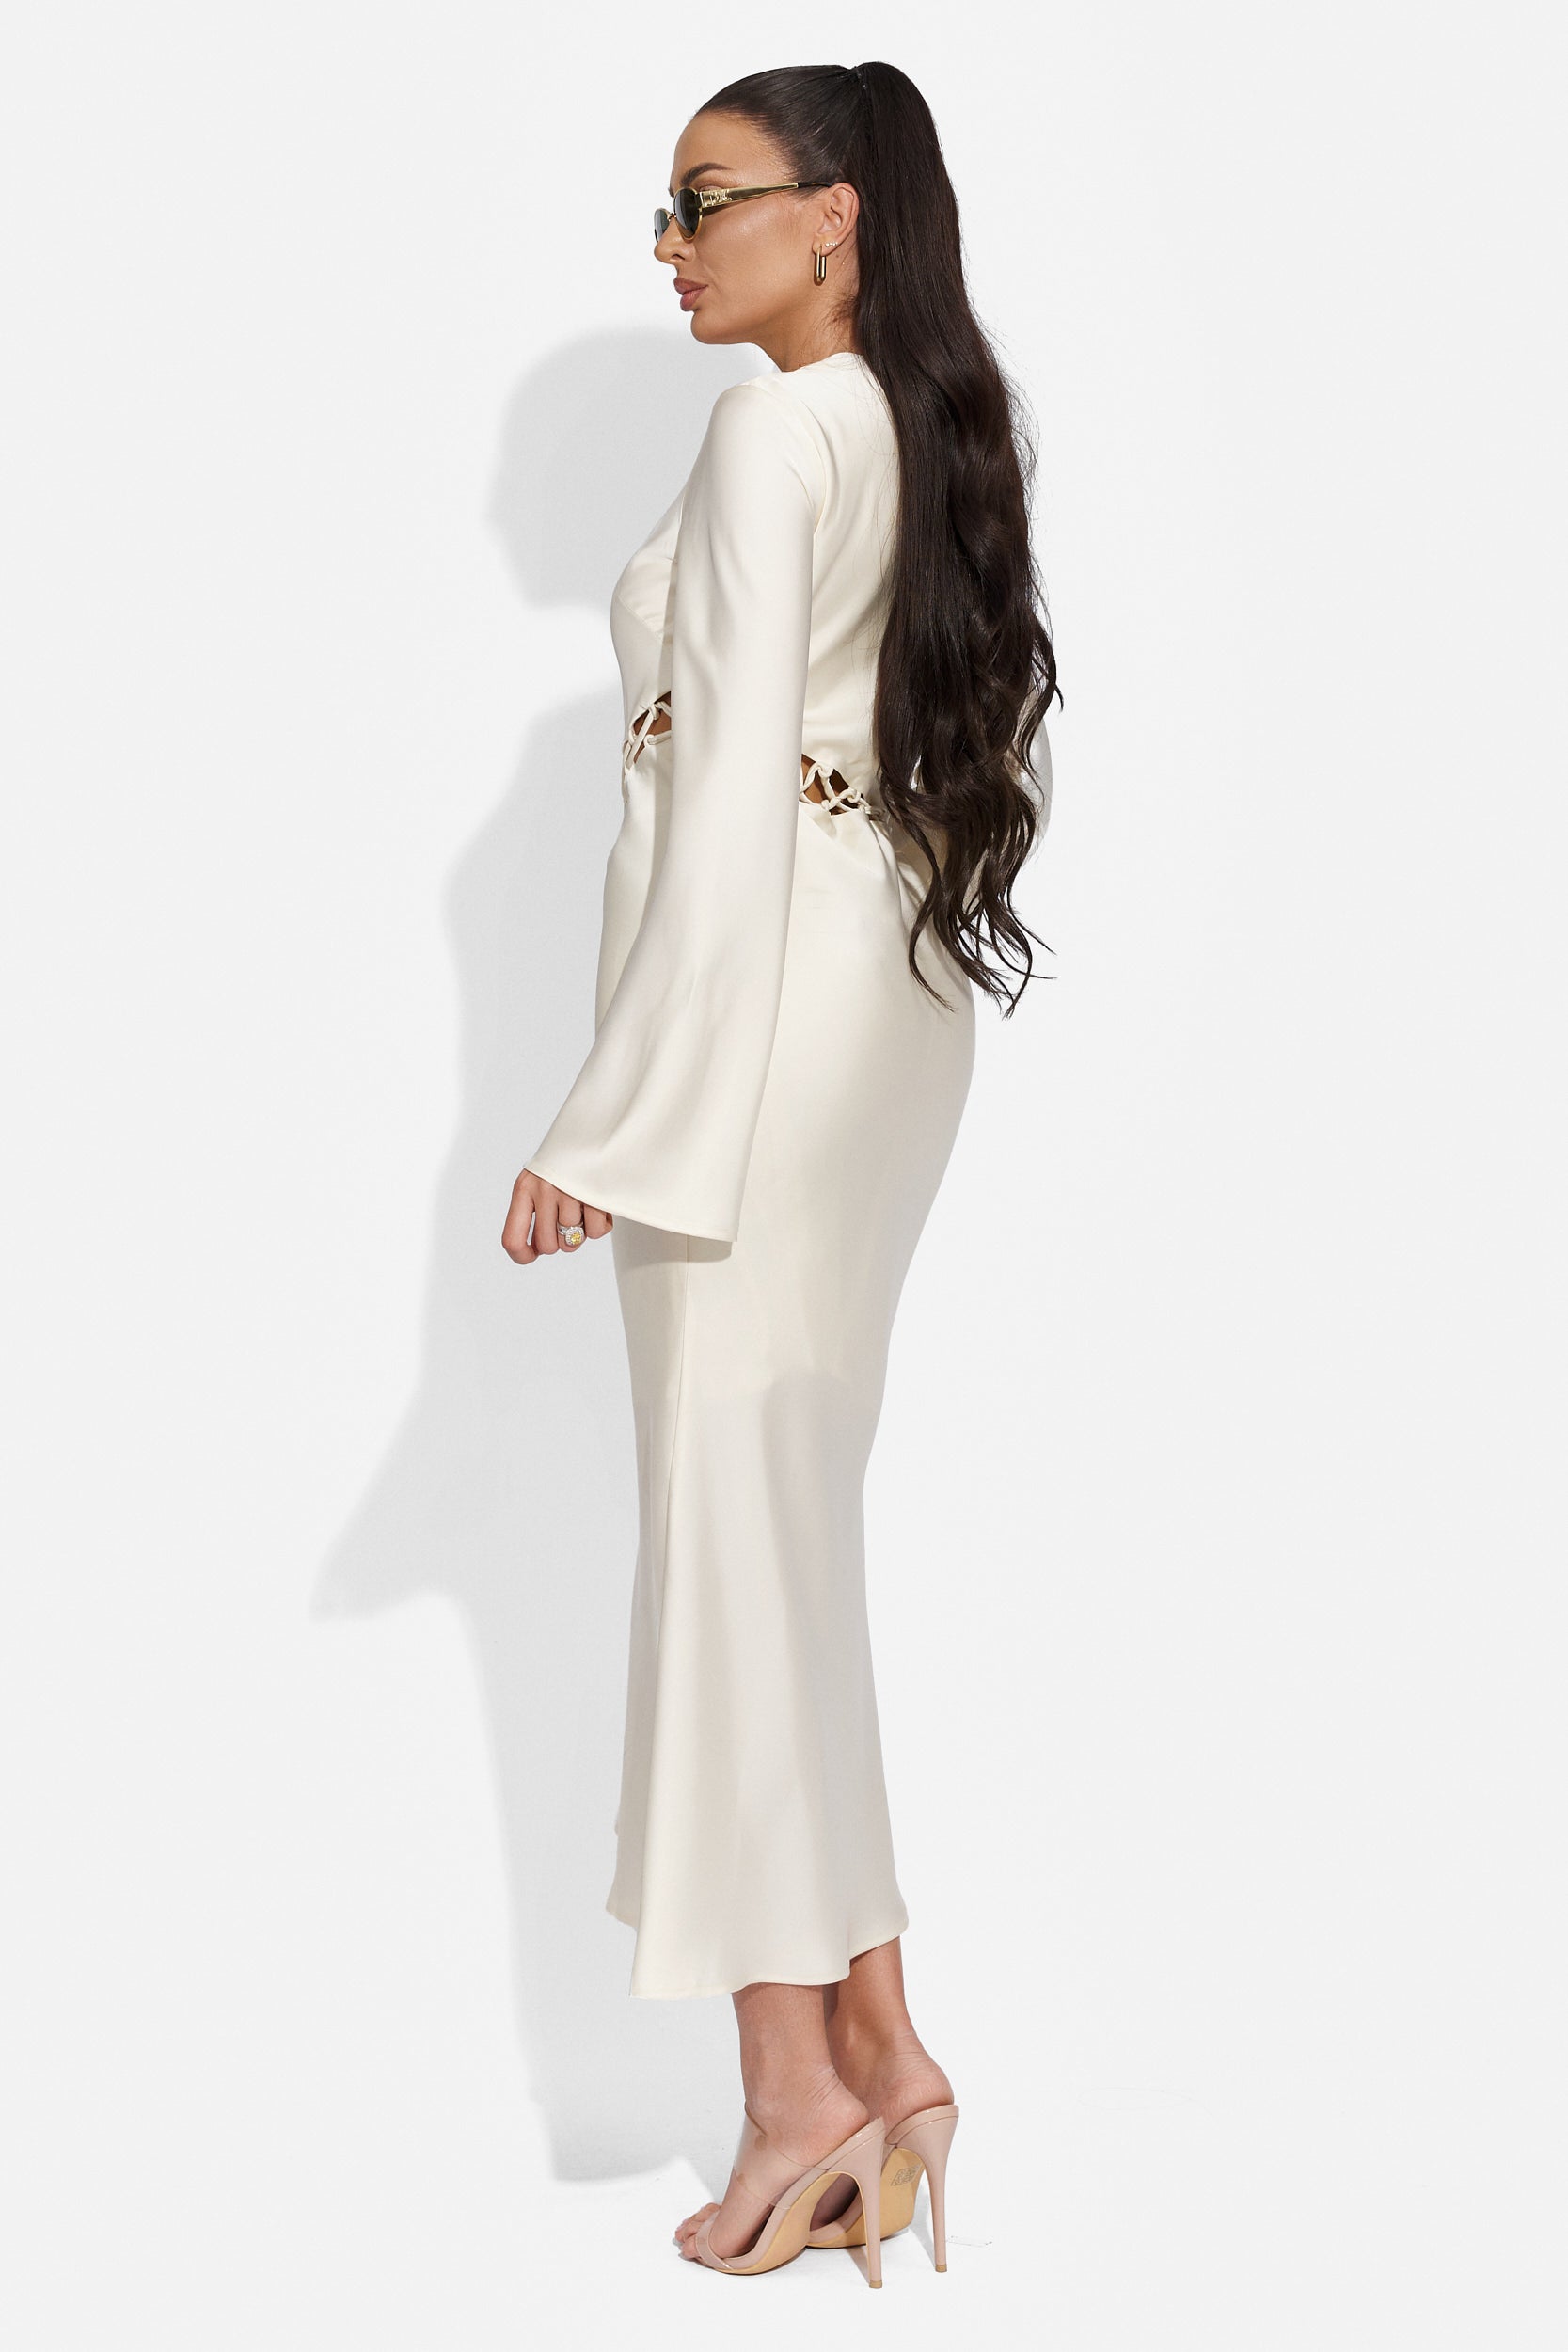 Desiara Bogas hosszú fehér női ruha